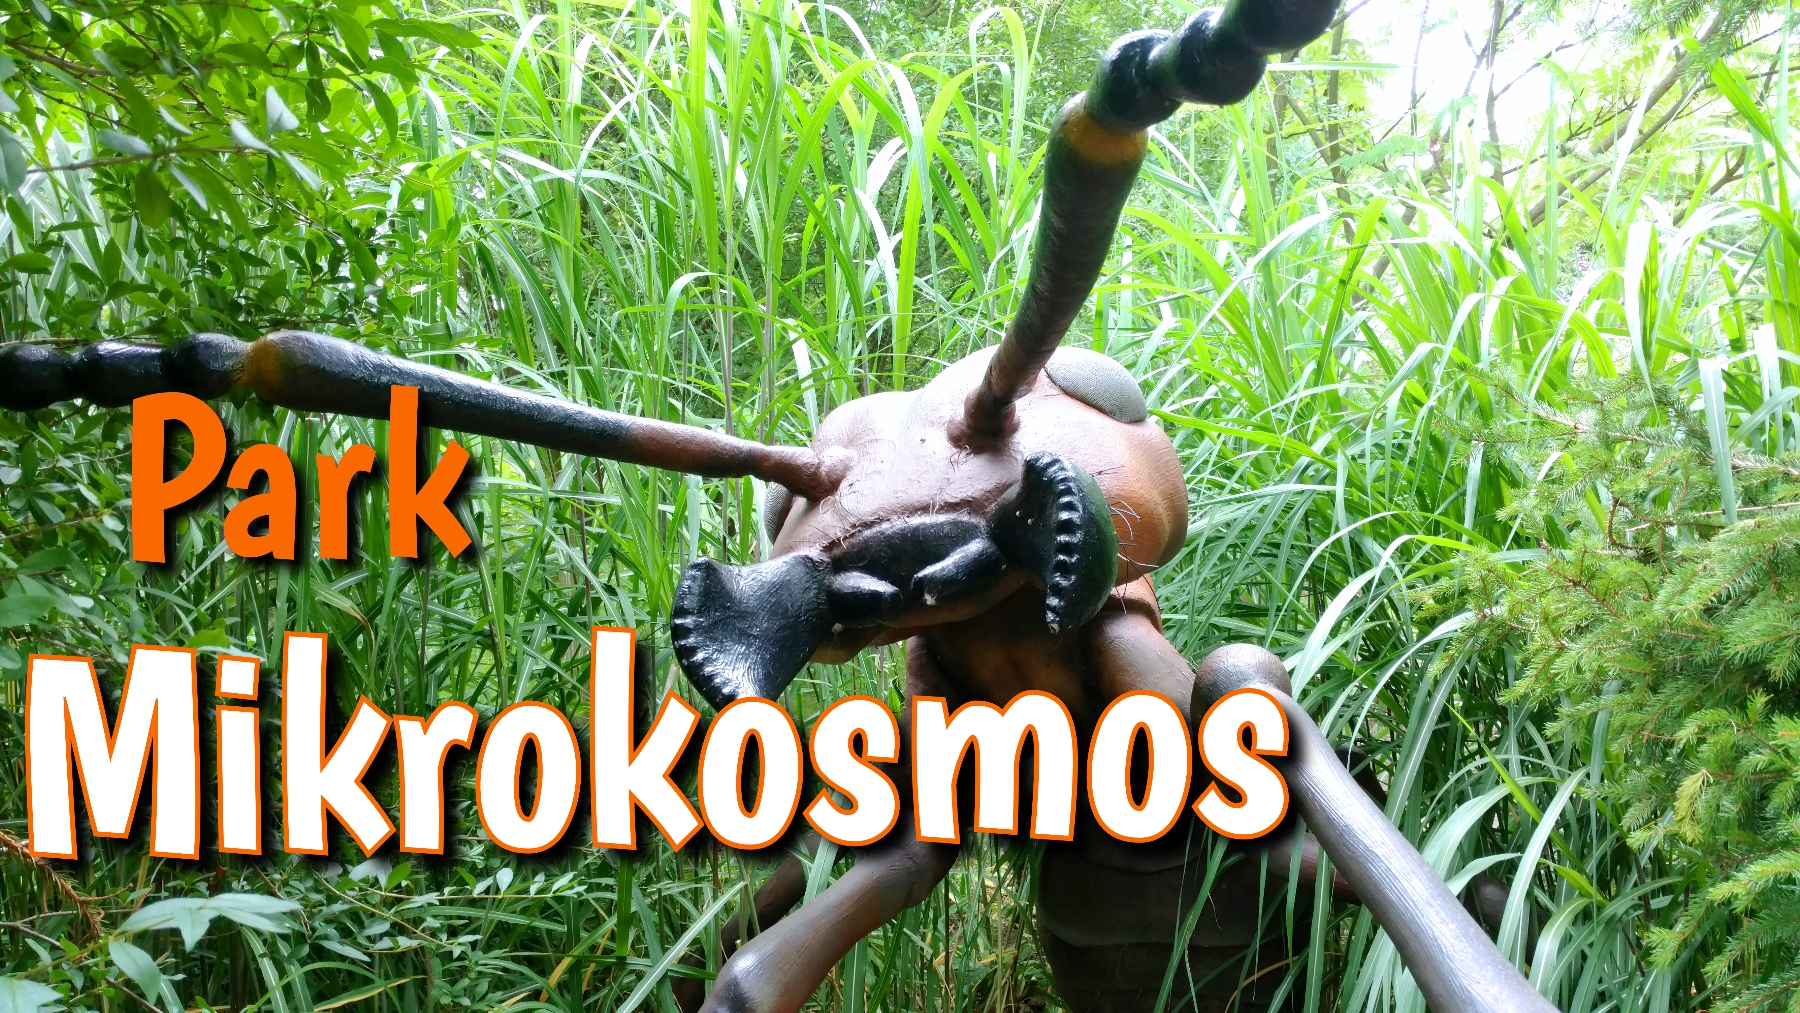 Mikrokosmos, park tematyczny z owadami w wersji maxi